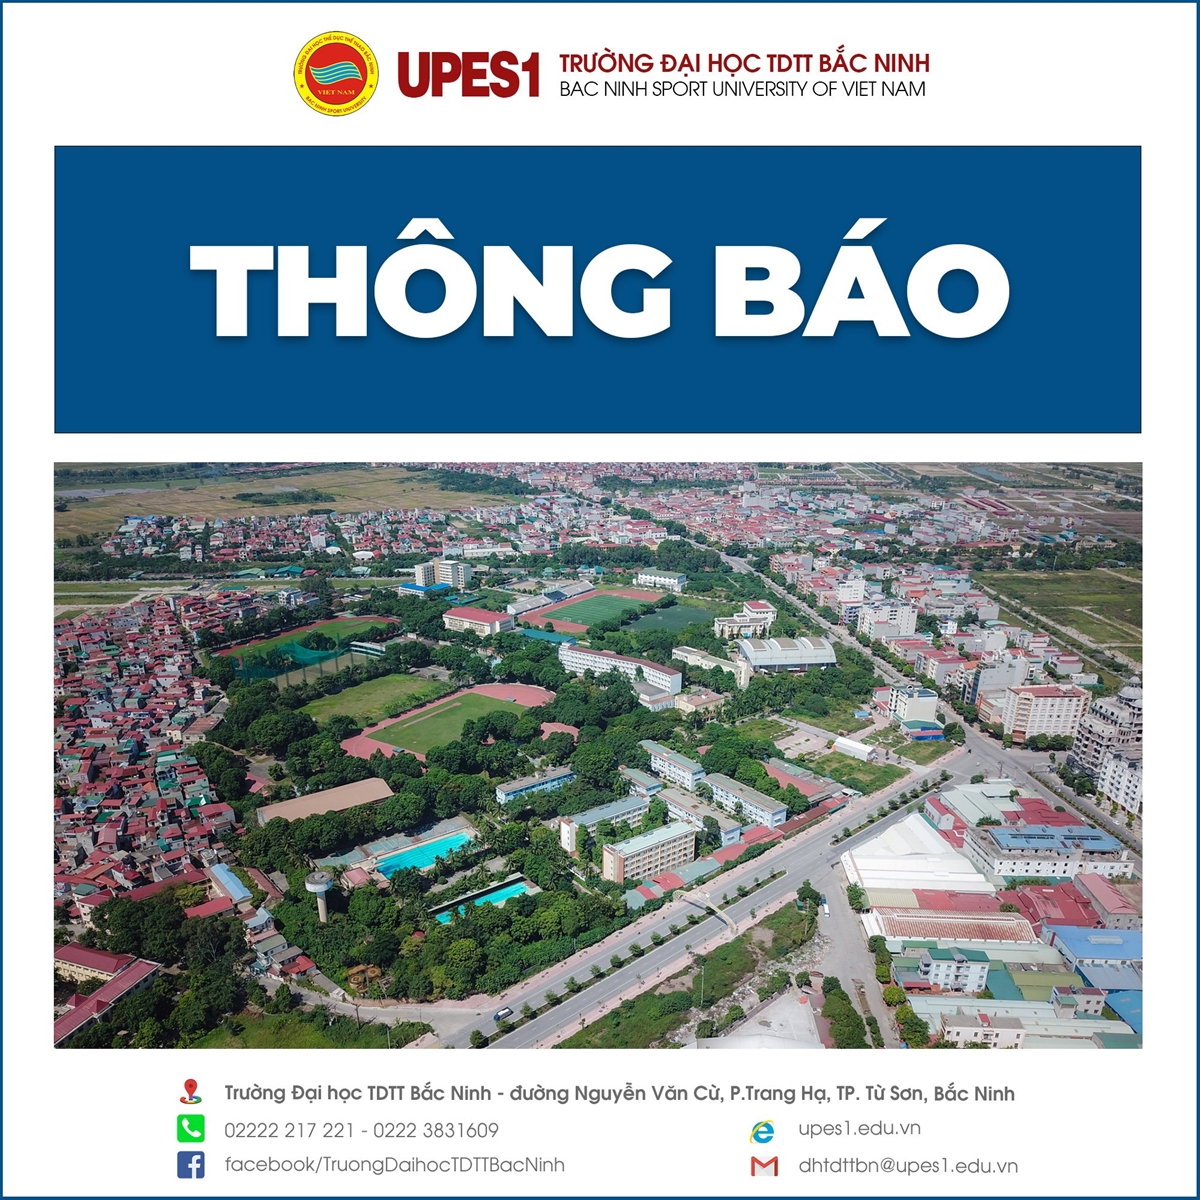 Quyết định và lý lịch thành viên Hội đồng Giáo sư cơ sở Trường Đại học TDTT Bắc Ninh năm 2022